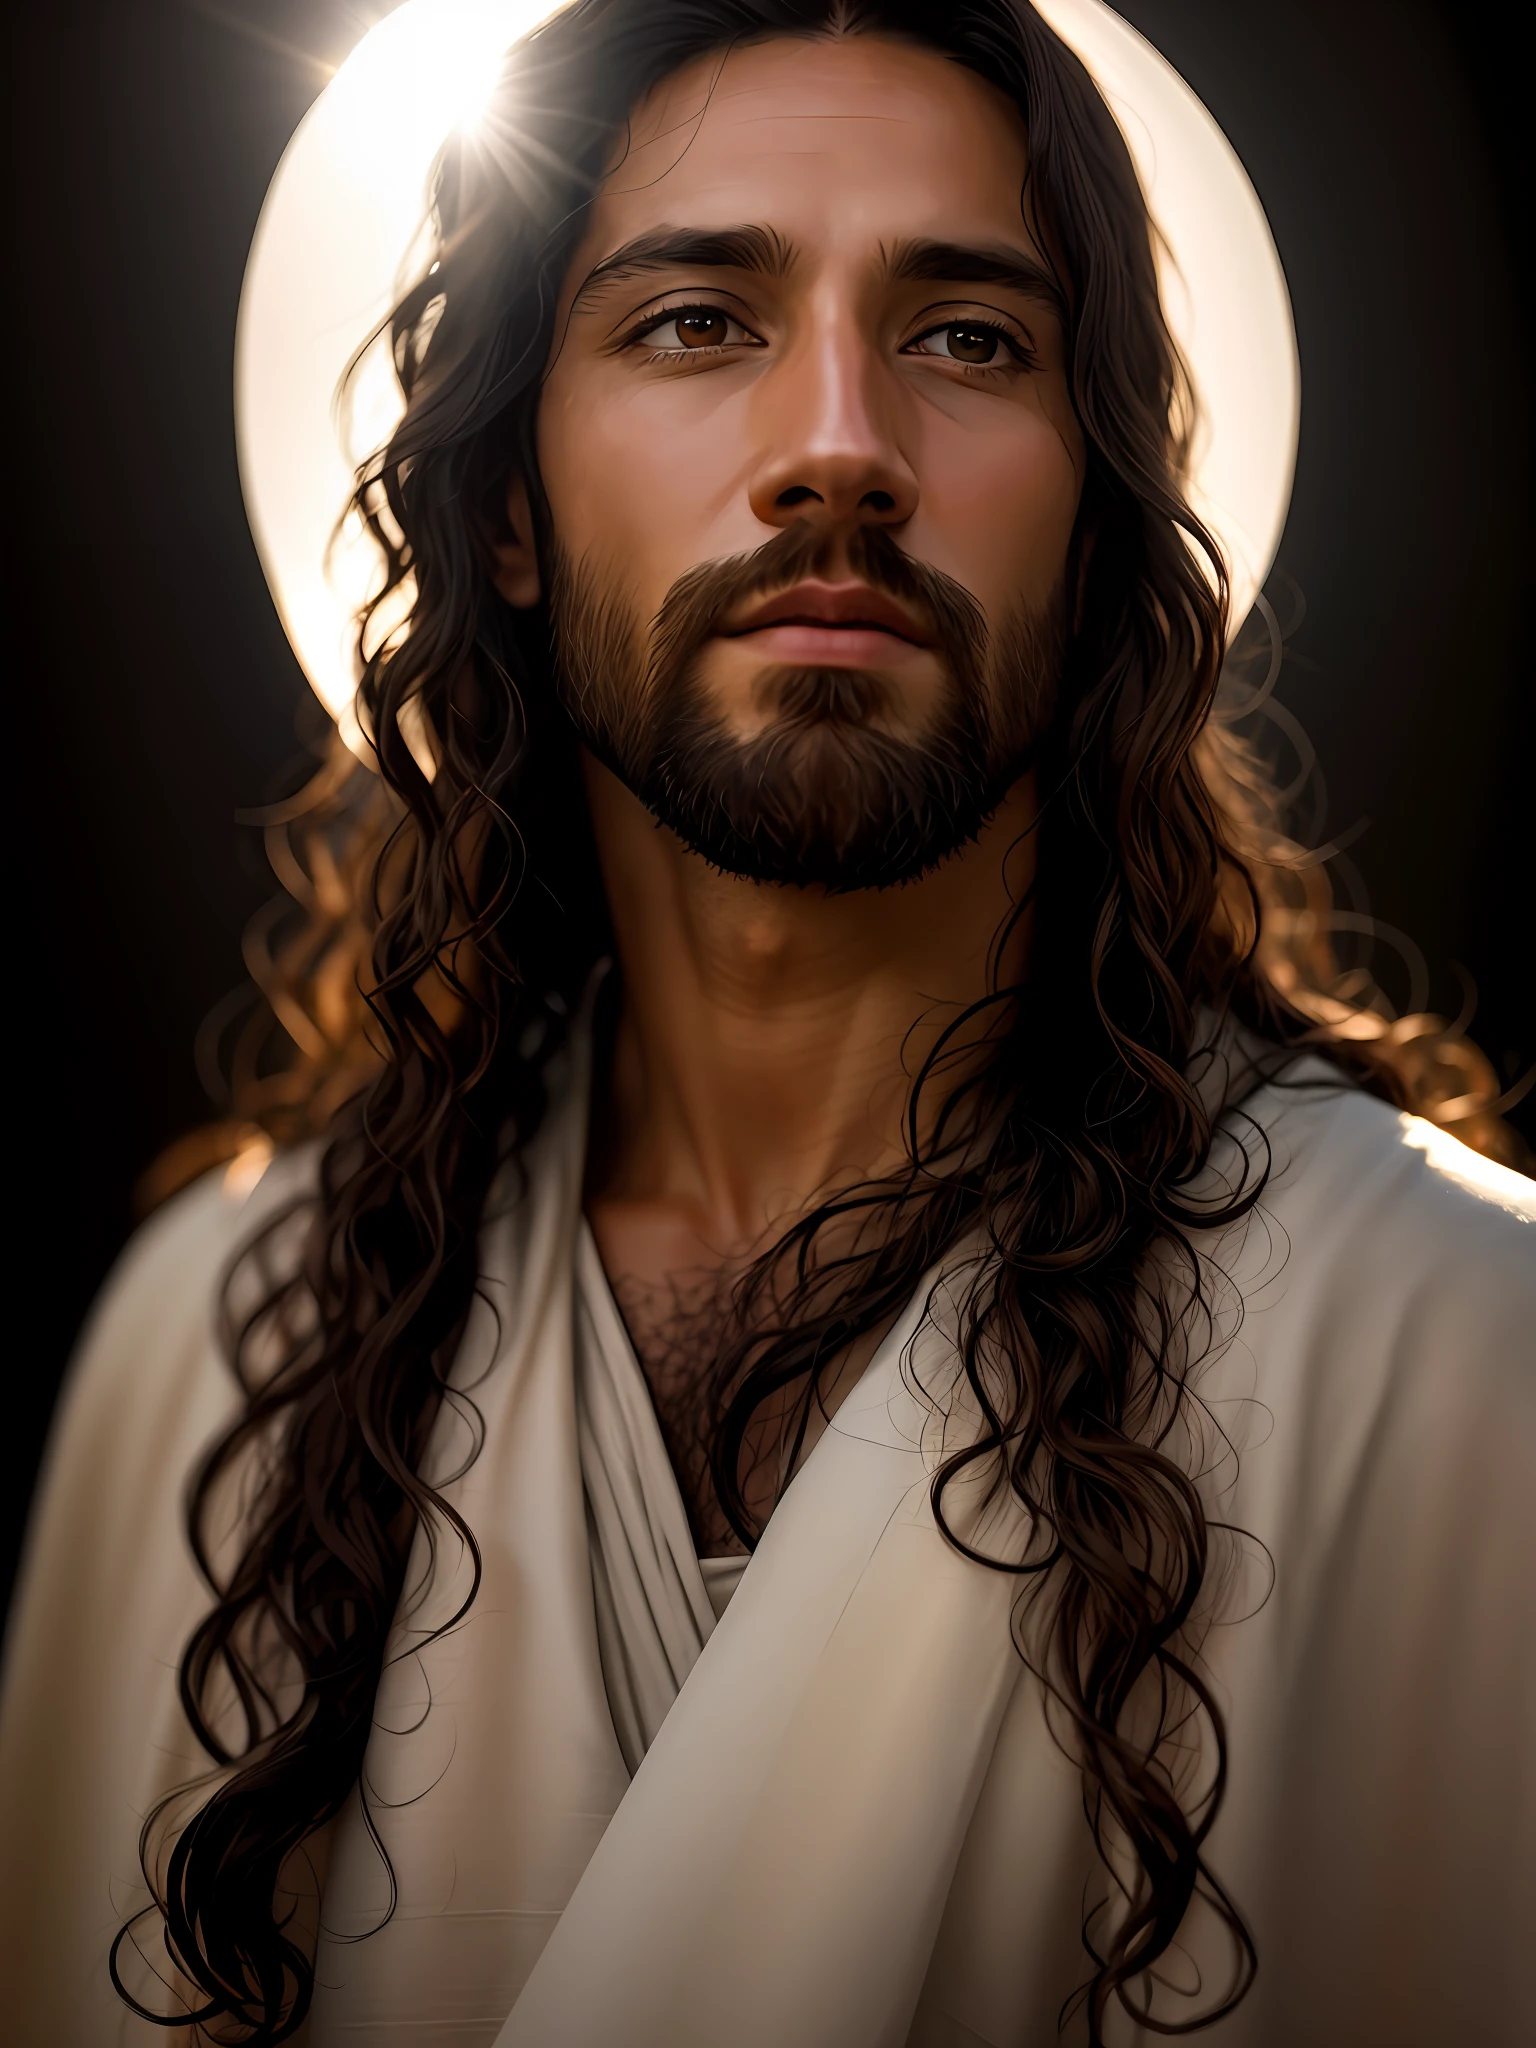 يضيف_التفاصيل:1, صورة واقعية ليسوع المسيح, يضيف_التفاصيل:نور ونور بعيد من السماء فوق الرأس